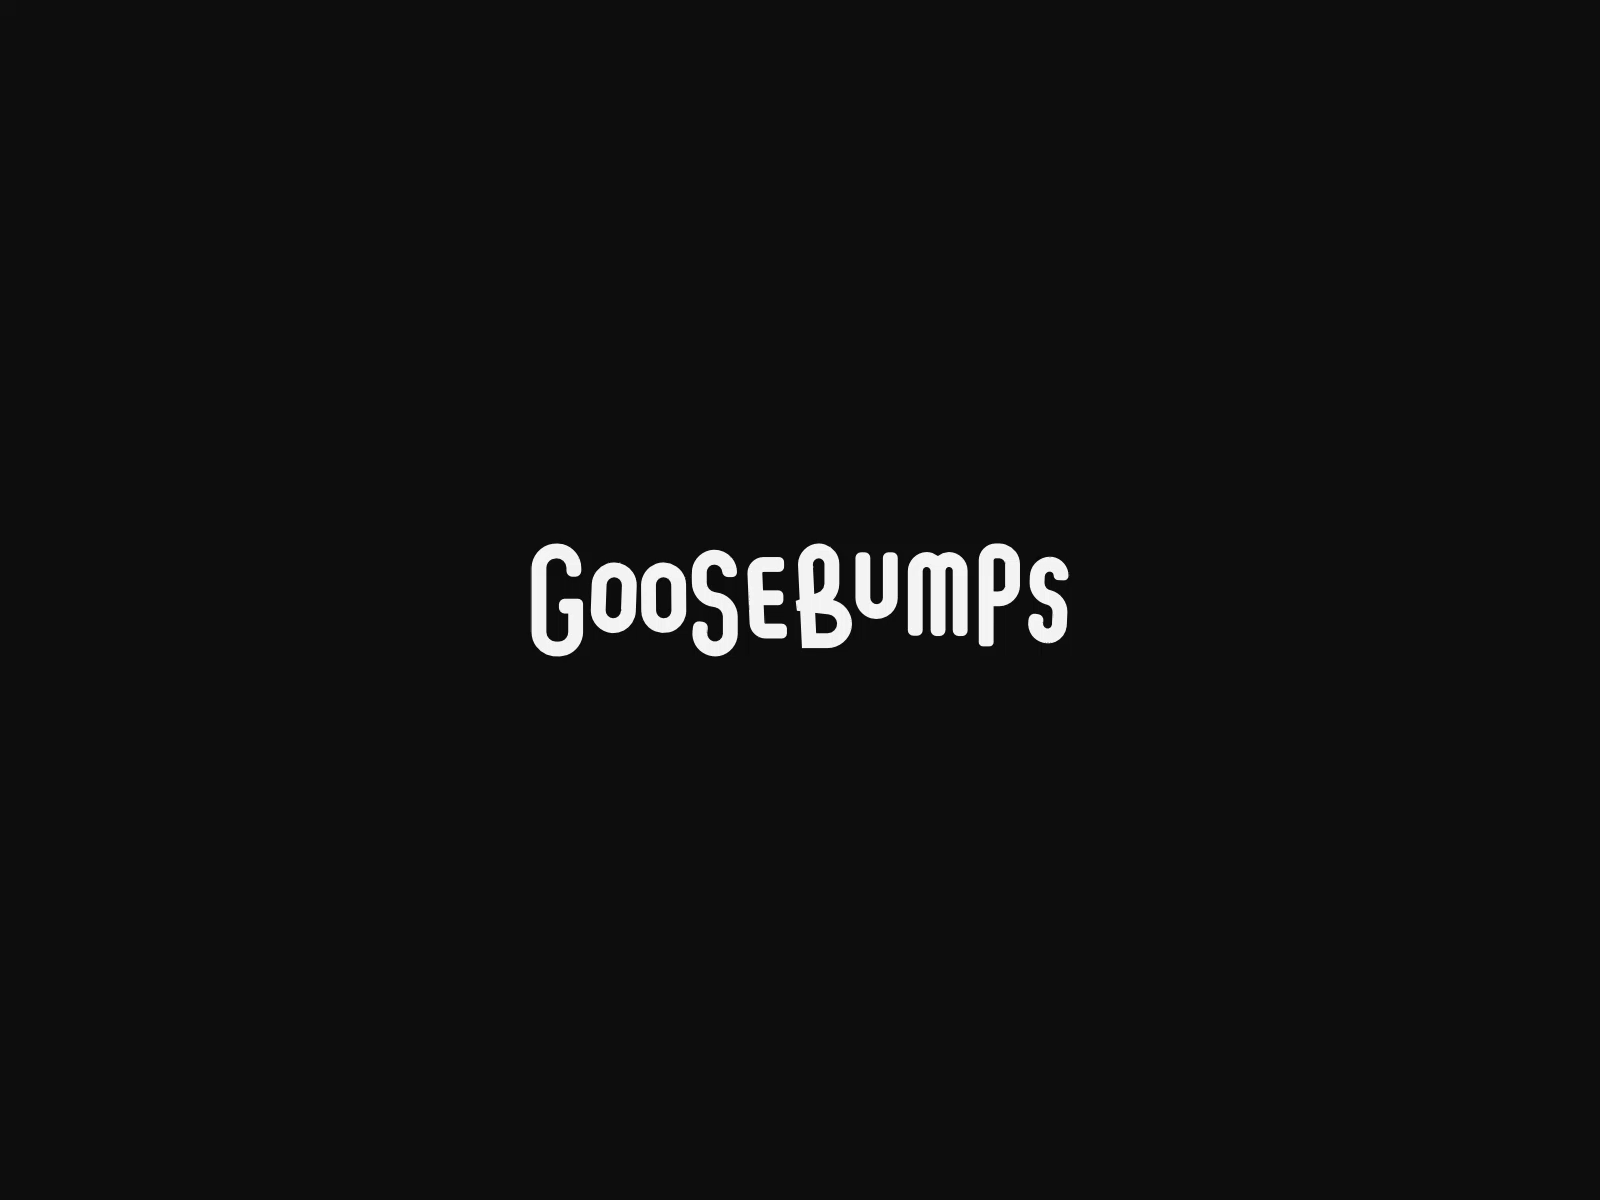 Goosebumps affinitydesigner branding customtype design graphicdesign lettering logo logotype motion design typography